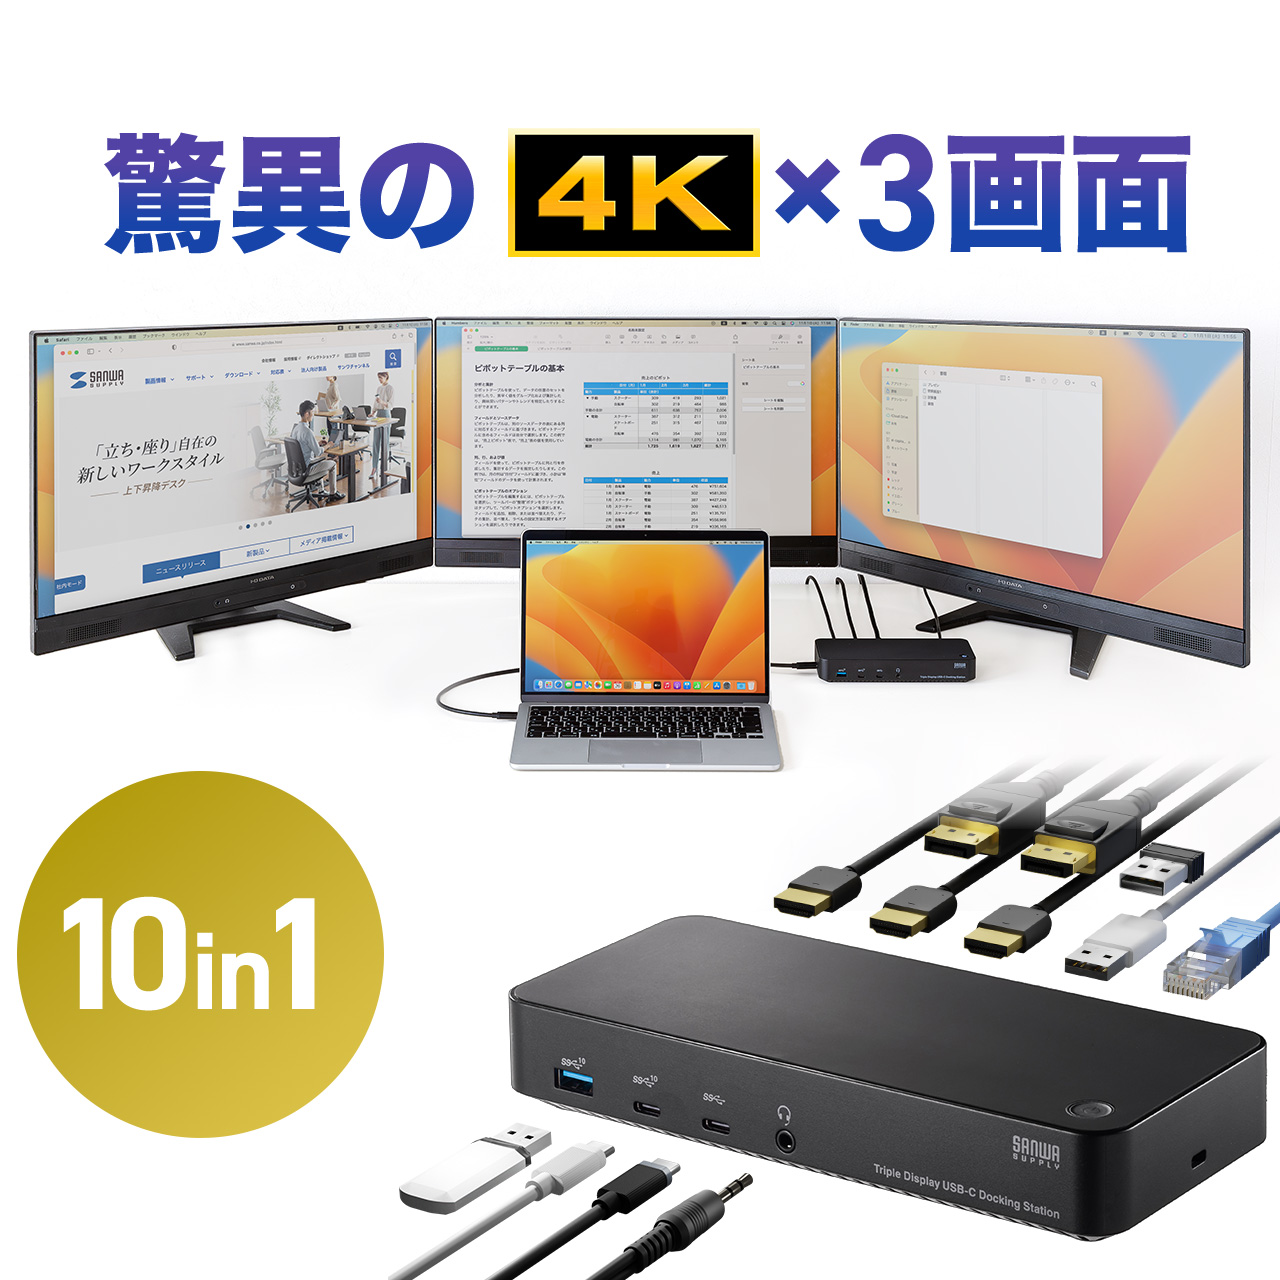 ドッキングステーション HDMI 3つ 3ポート 4K 60Hz DisplayPort 3画面 トリプルディスプレイ USB-C Type-C 接続 10in1 Win mac対応 有線LAN 対応 拡張 増設